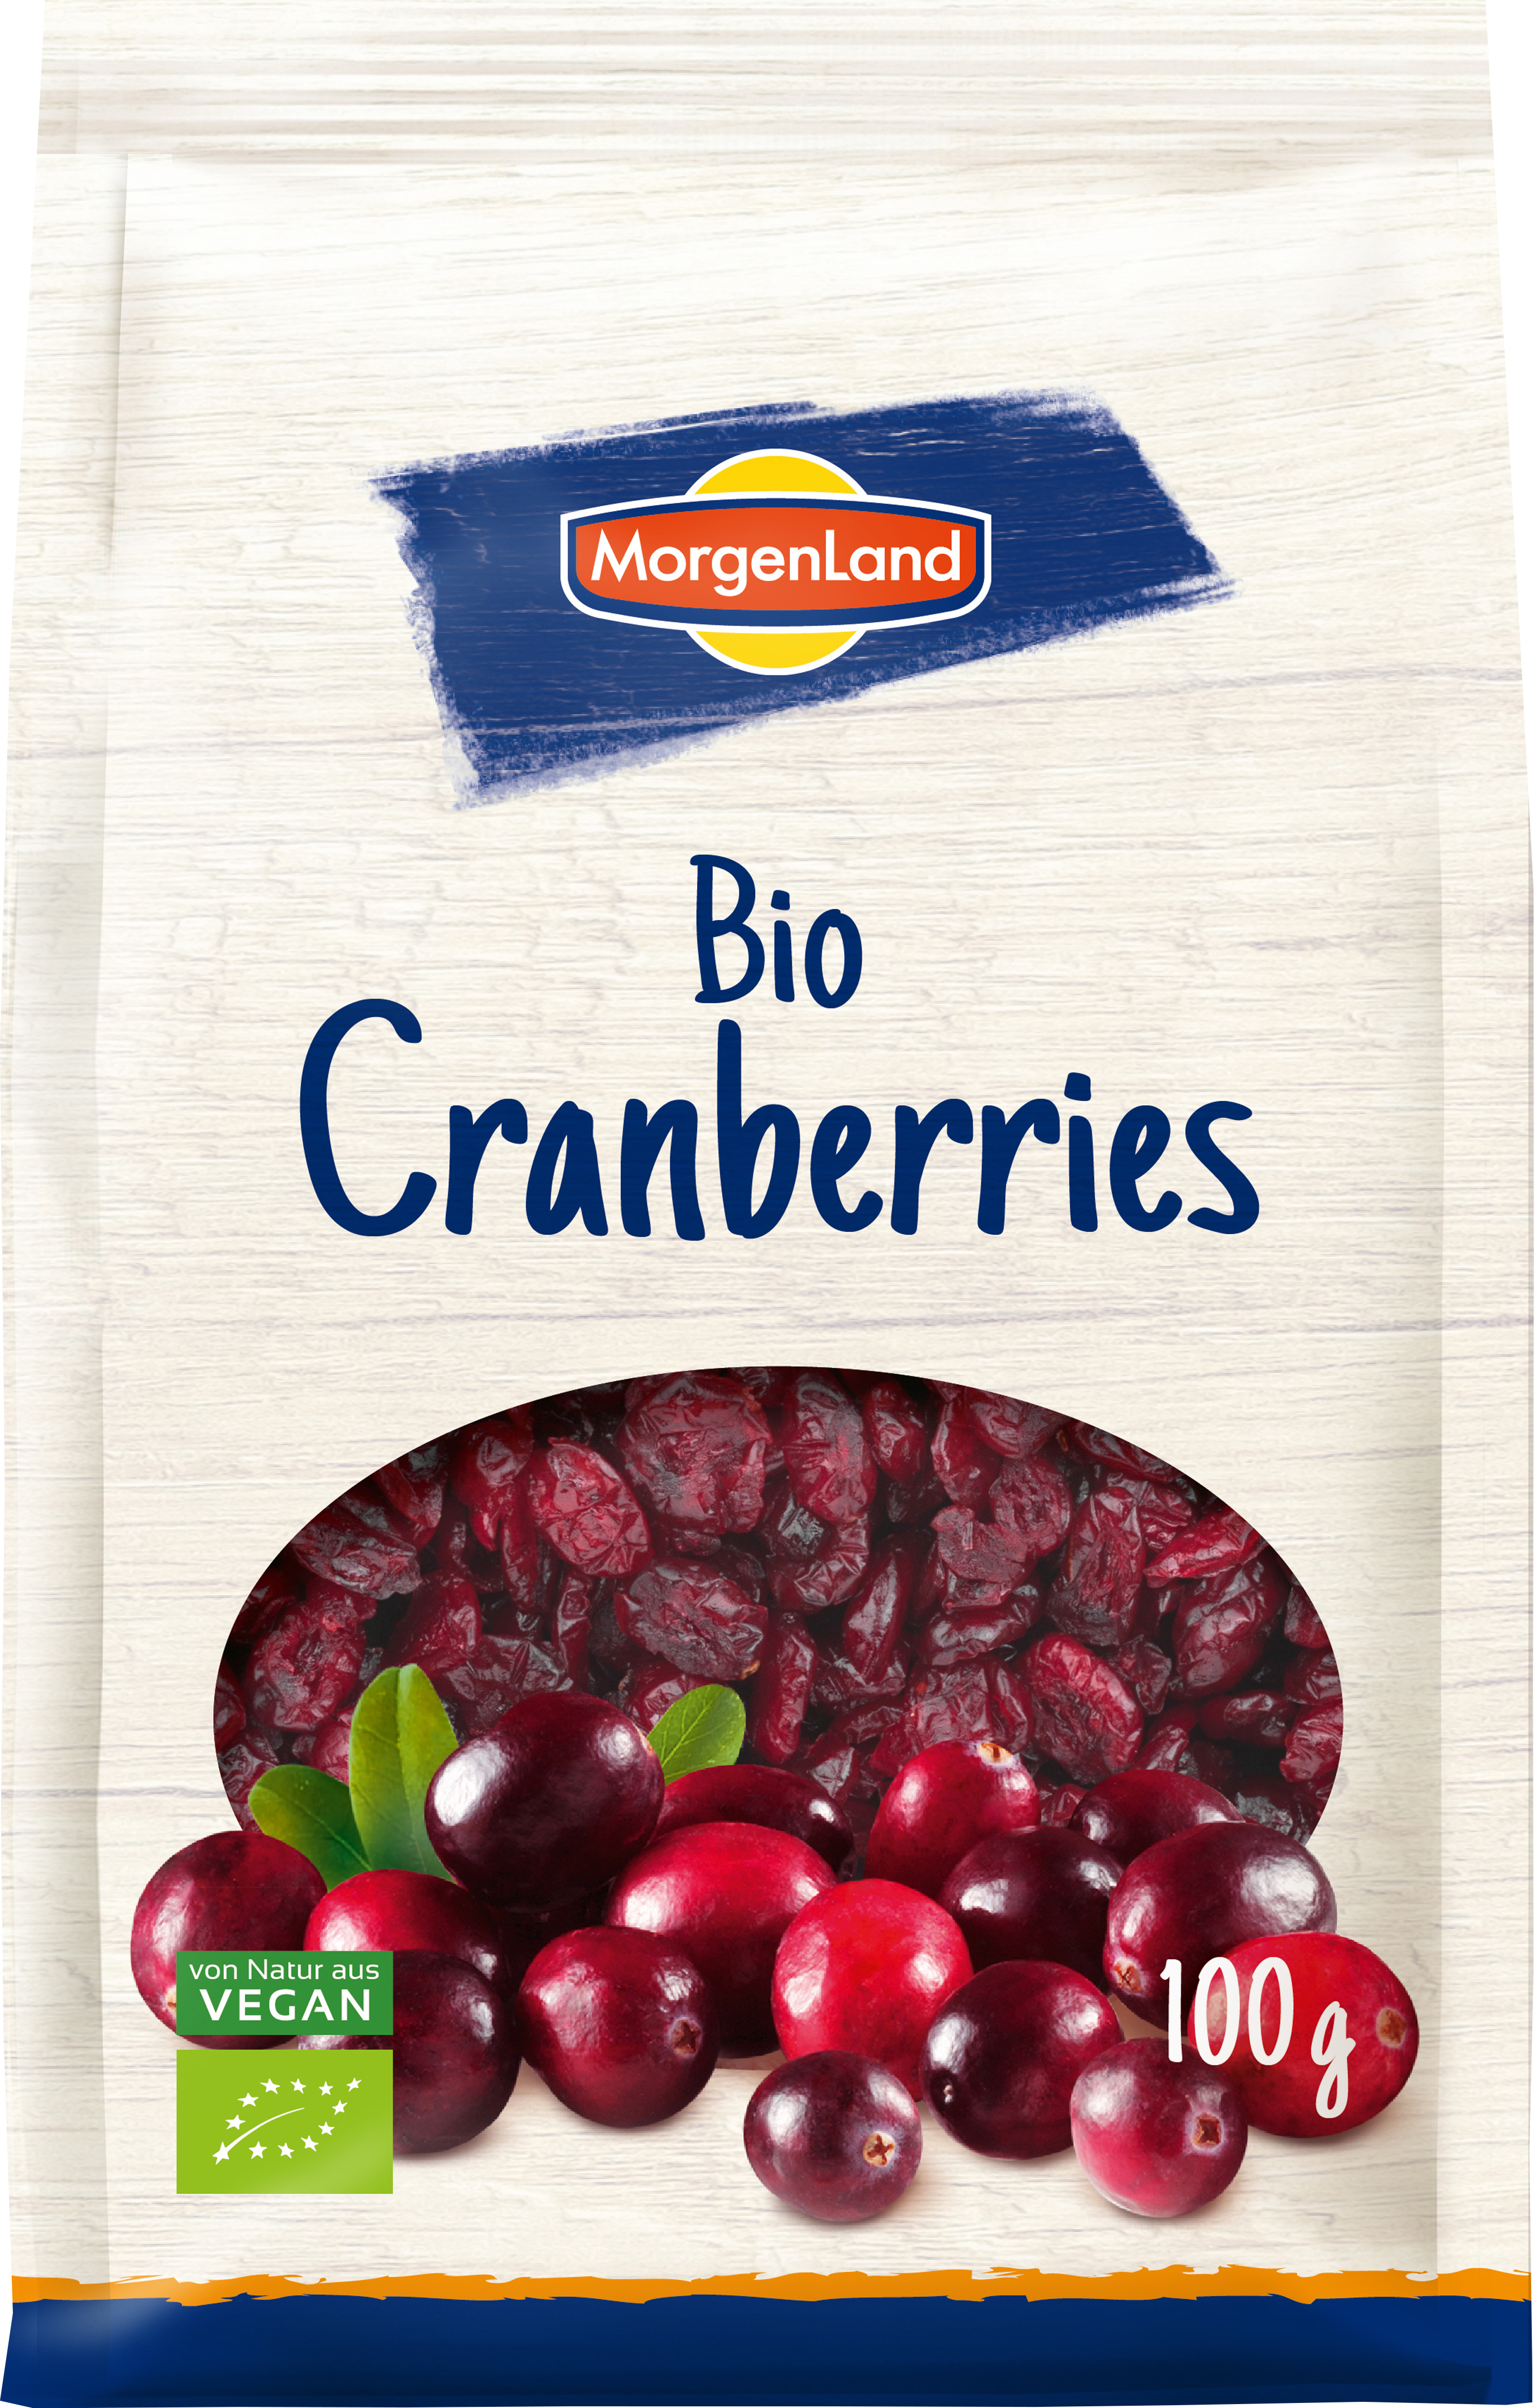 MorgenLand Cranberries 100g/nl